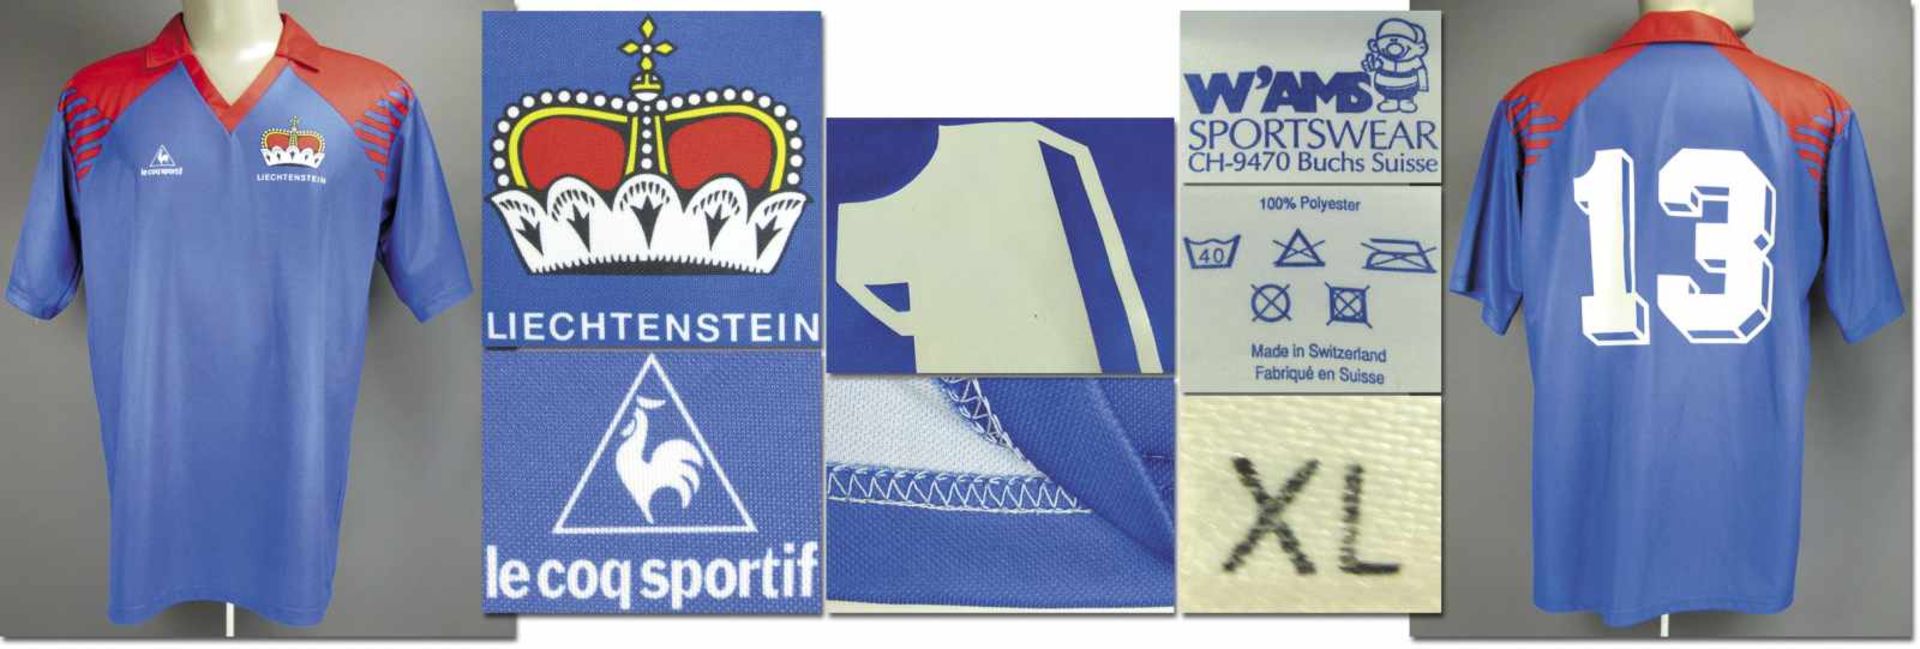 match worn football shirt Liechtenstein 1994/95 - Original match worn shirt Liechtenstein with